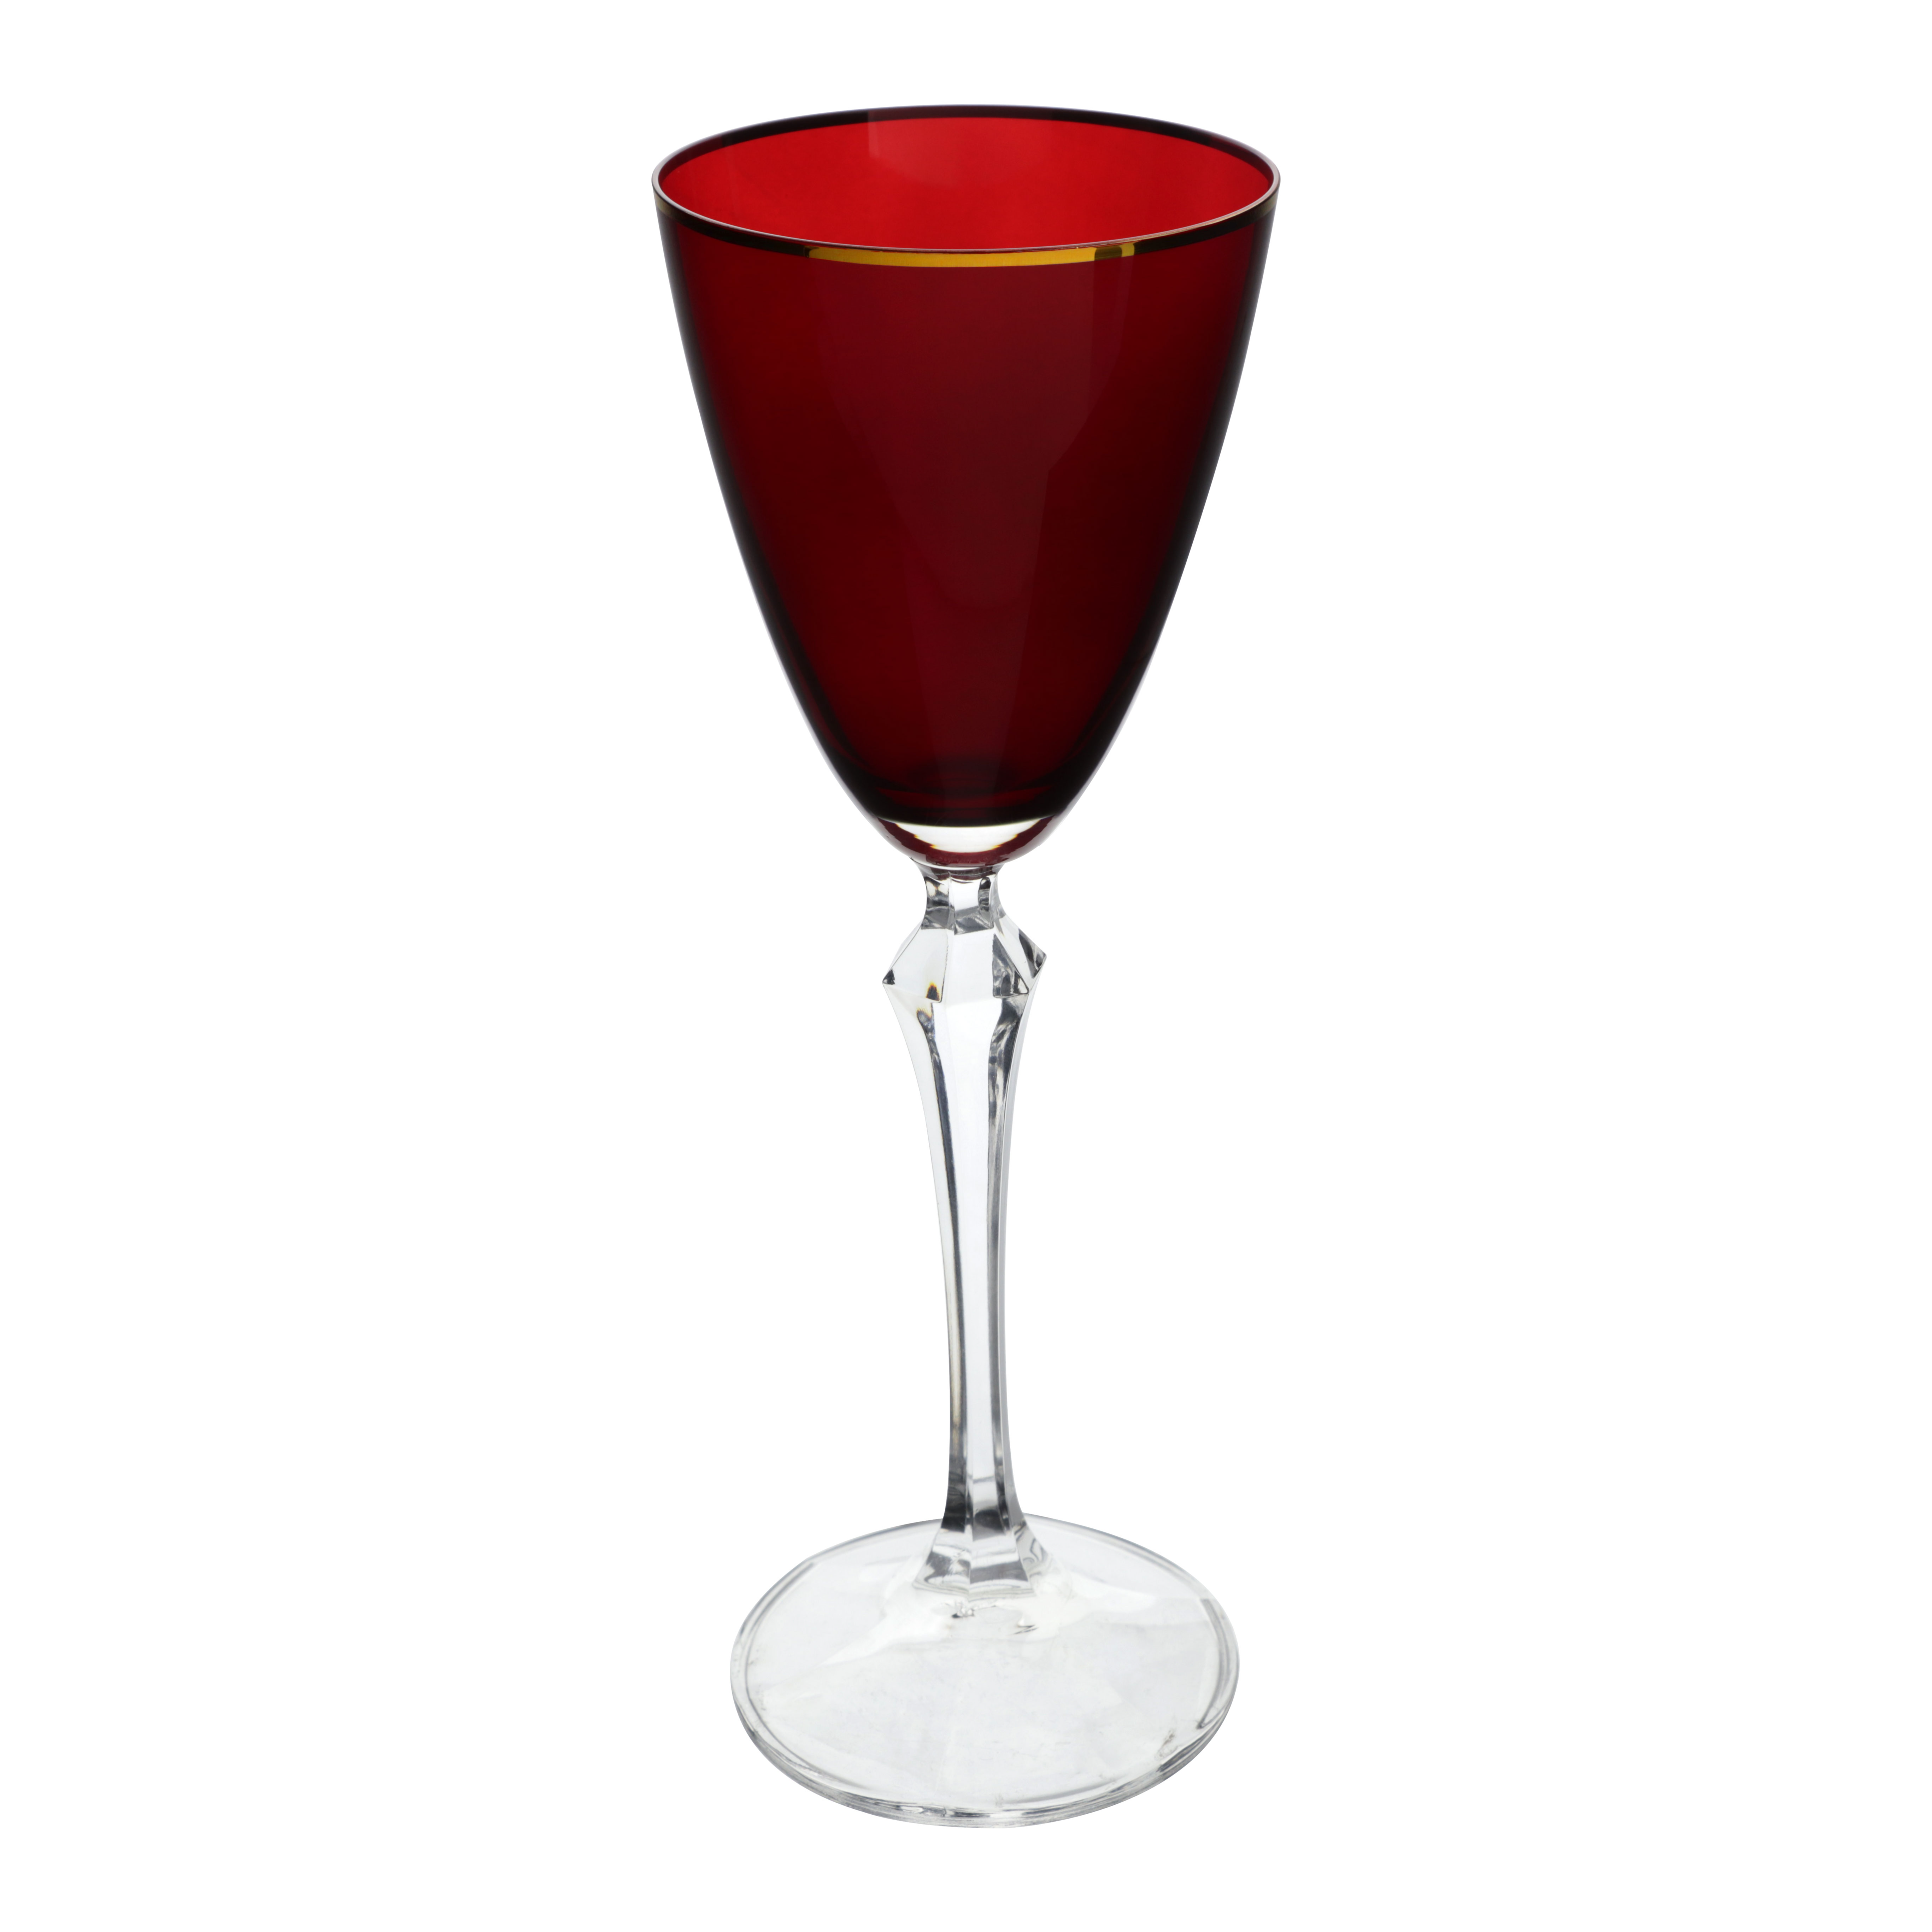 Jogo de 6 tacas para vinho tinto Elizabeth Gold Rim em cristal ecologico 250ml A22cm cor vermelha